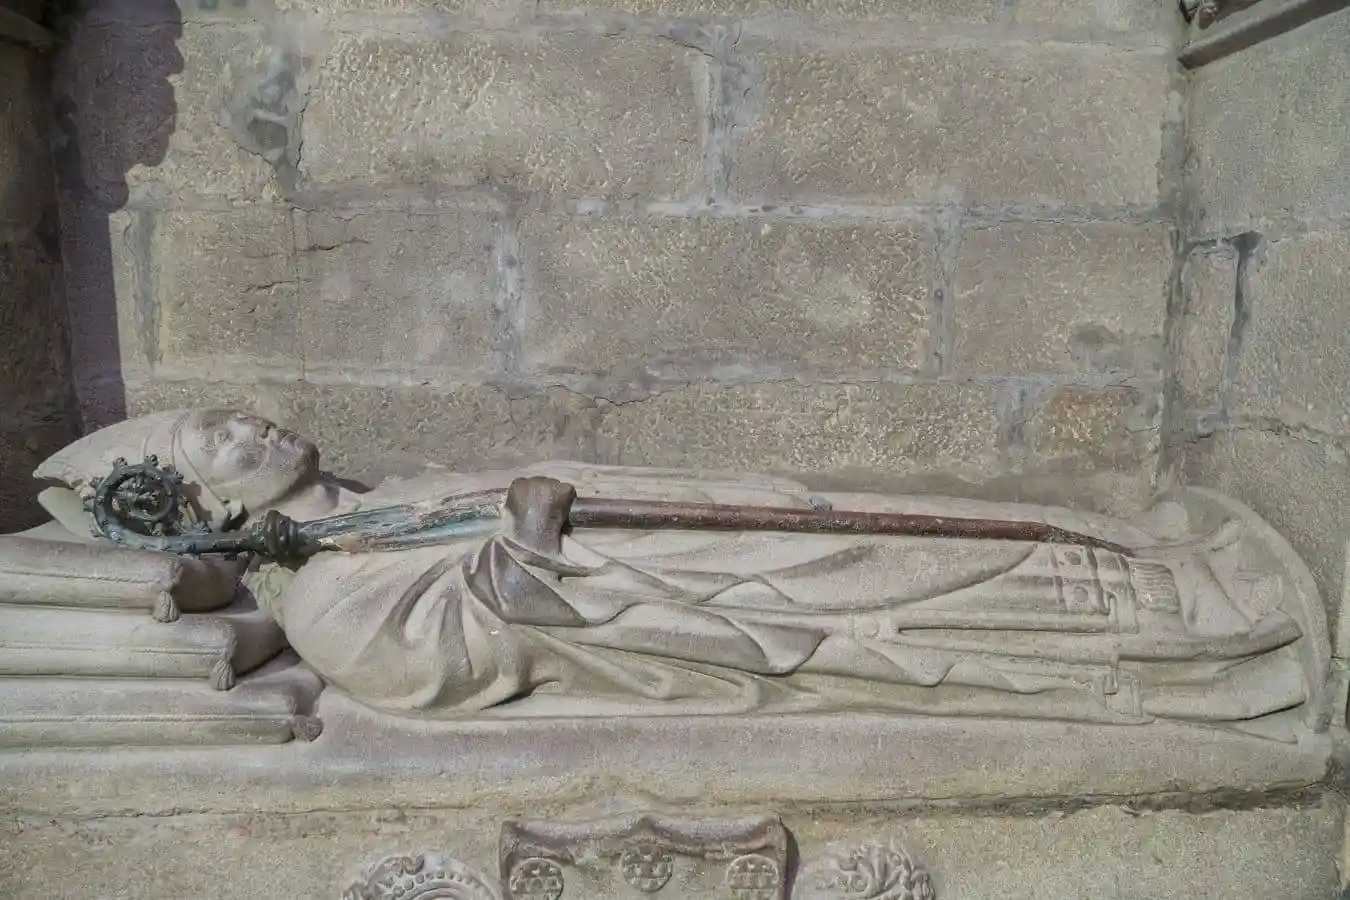 Sepulcro del obispo de Ourense Alonso López de Valladolid, en la escalera de acceso a la catedral desde la fachada norte